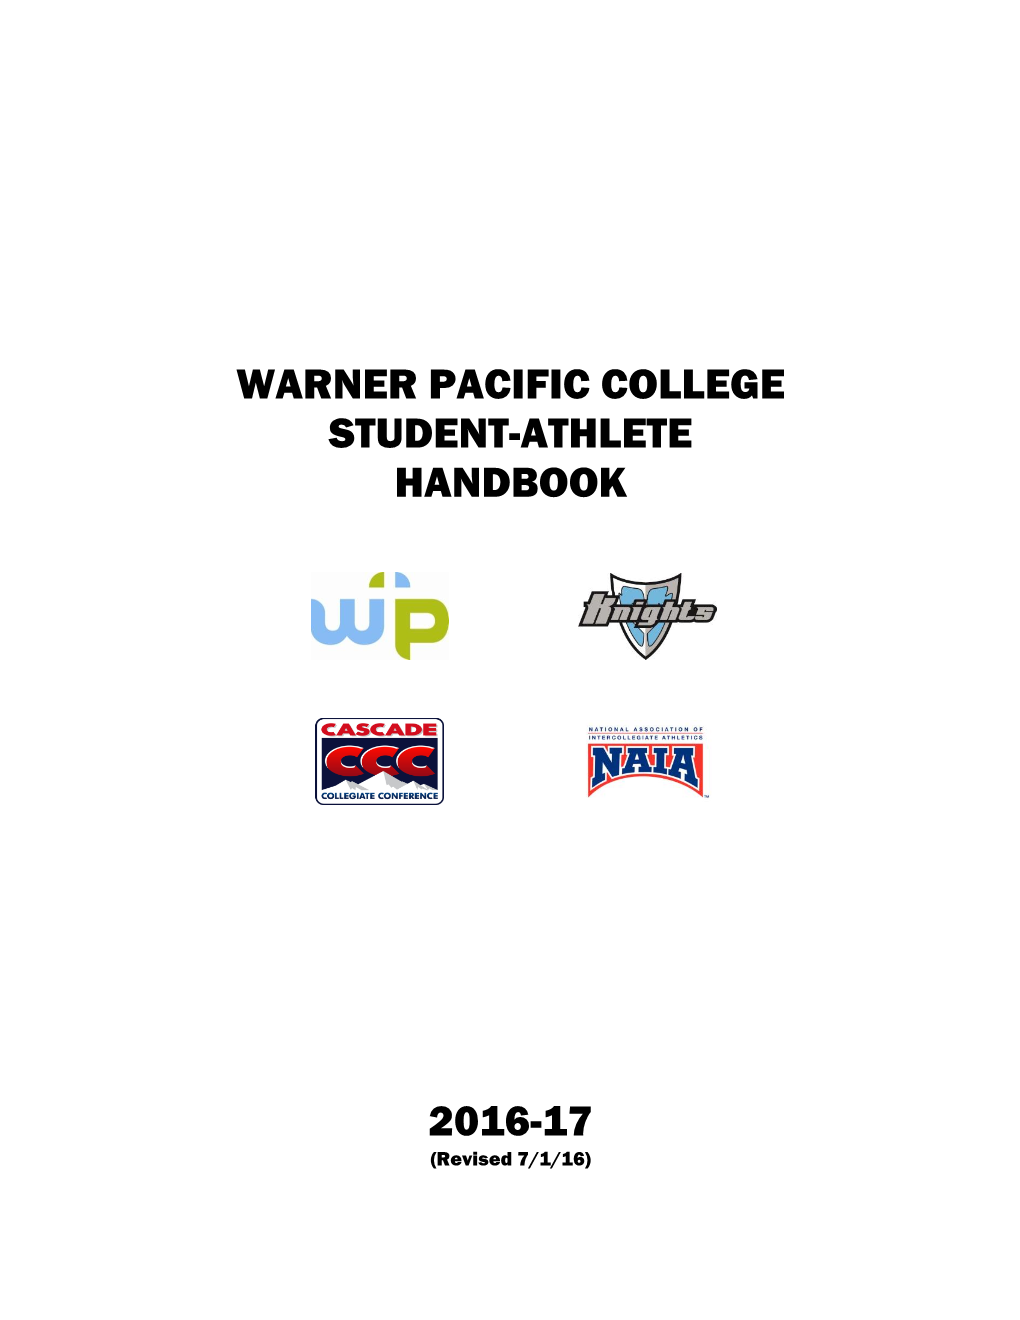 Warner Pacific College Student-Athlete Handbook